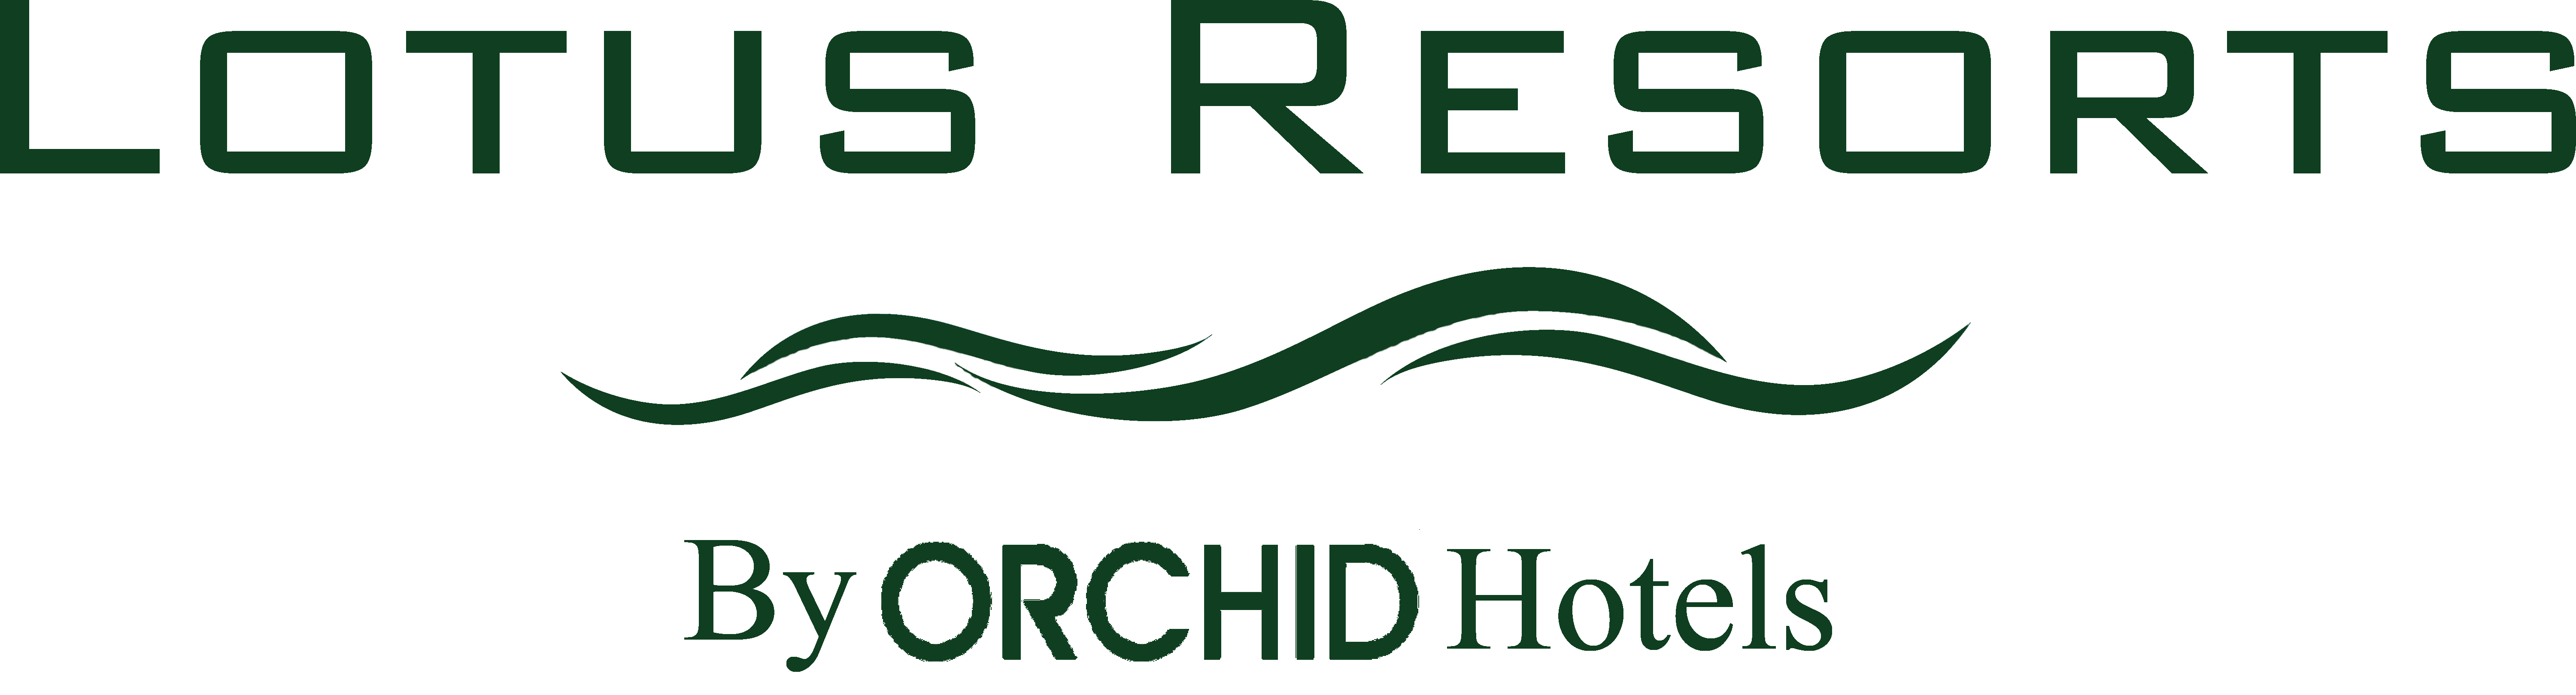 Lotus Resort logo wellness retreats near Mumbai